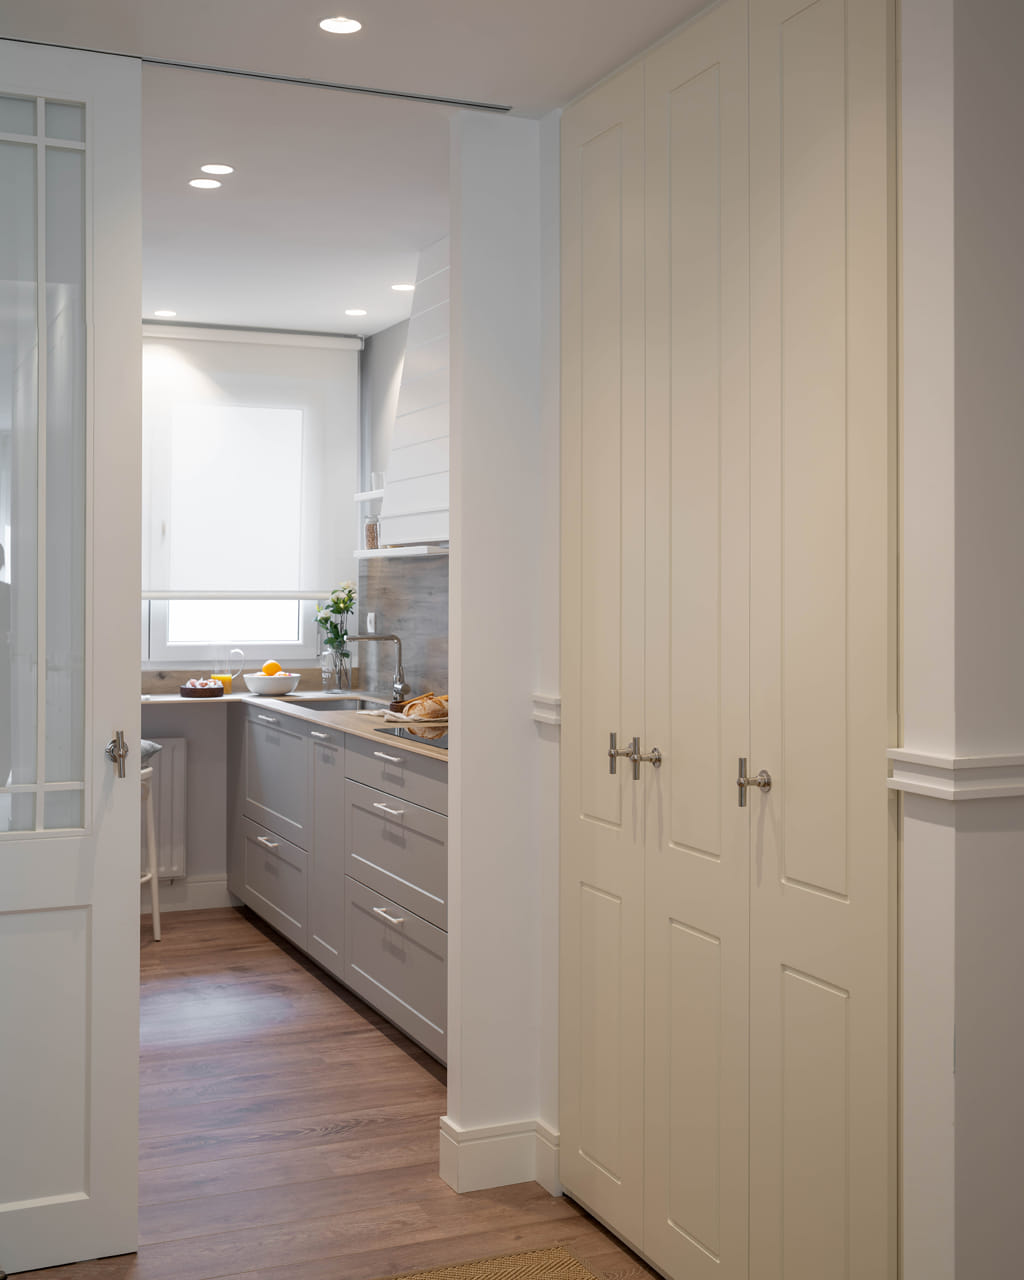 Cozinha branca e cinzenta com armários superiores e inferiores